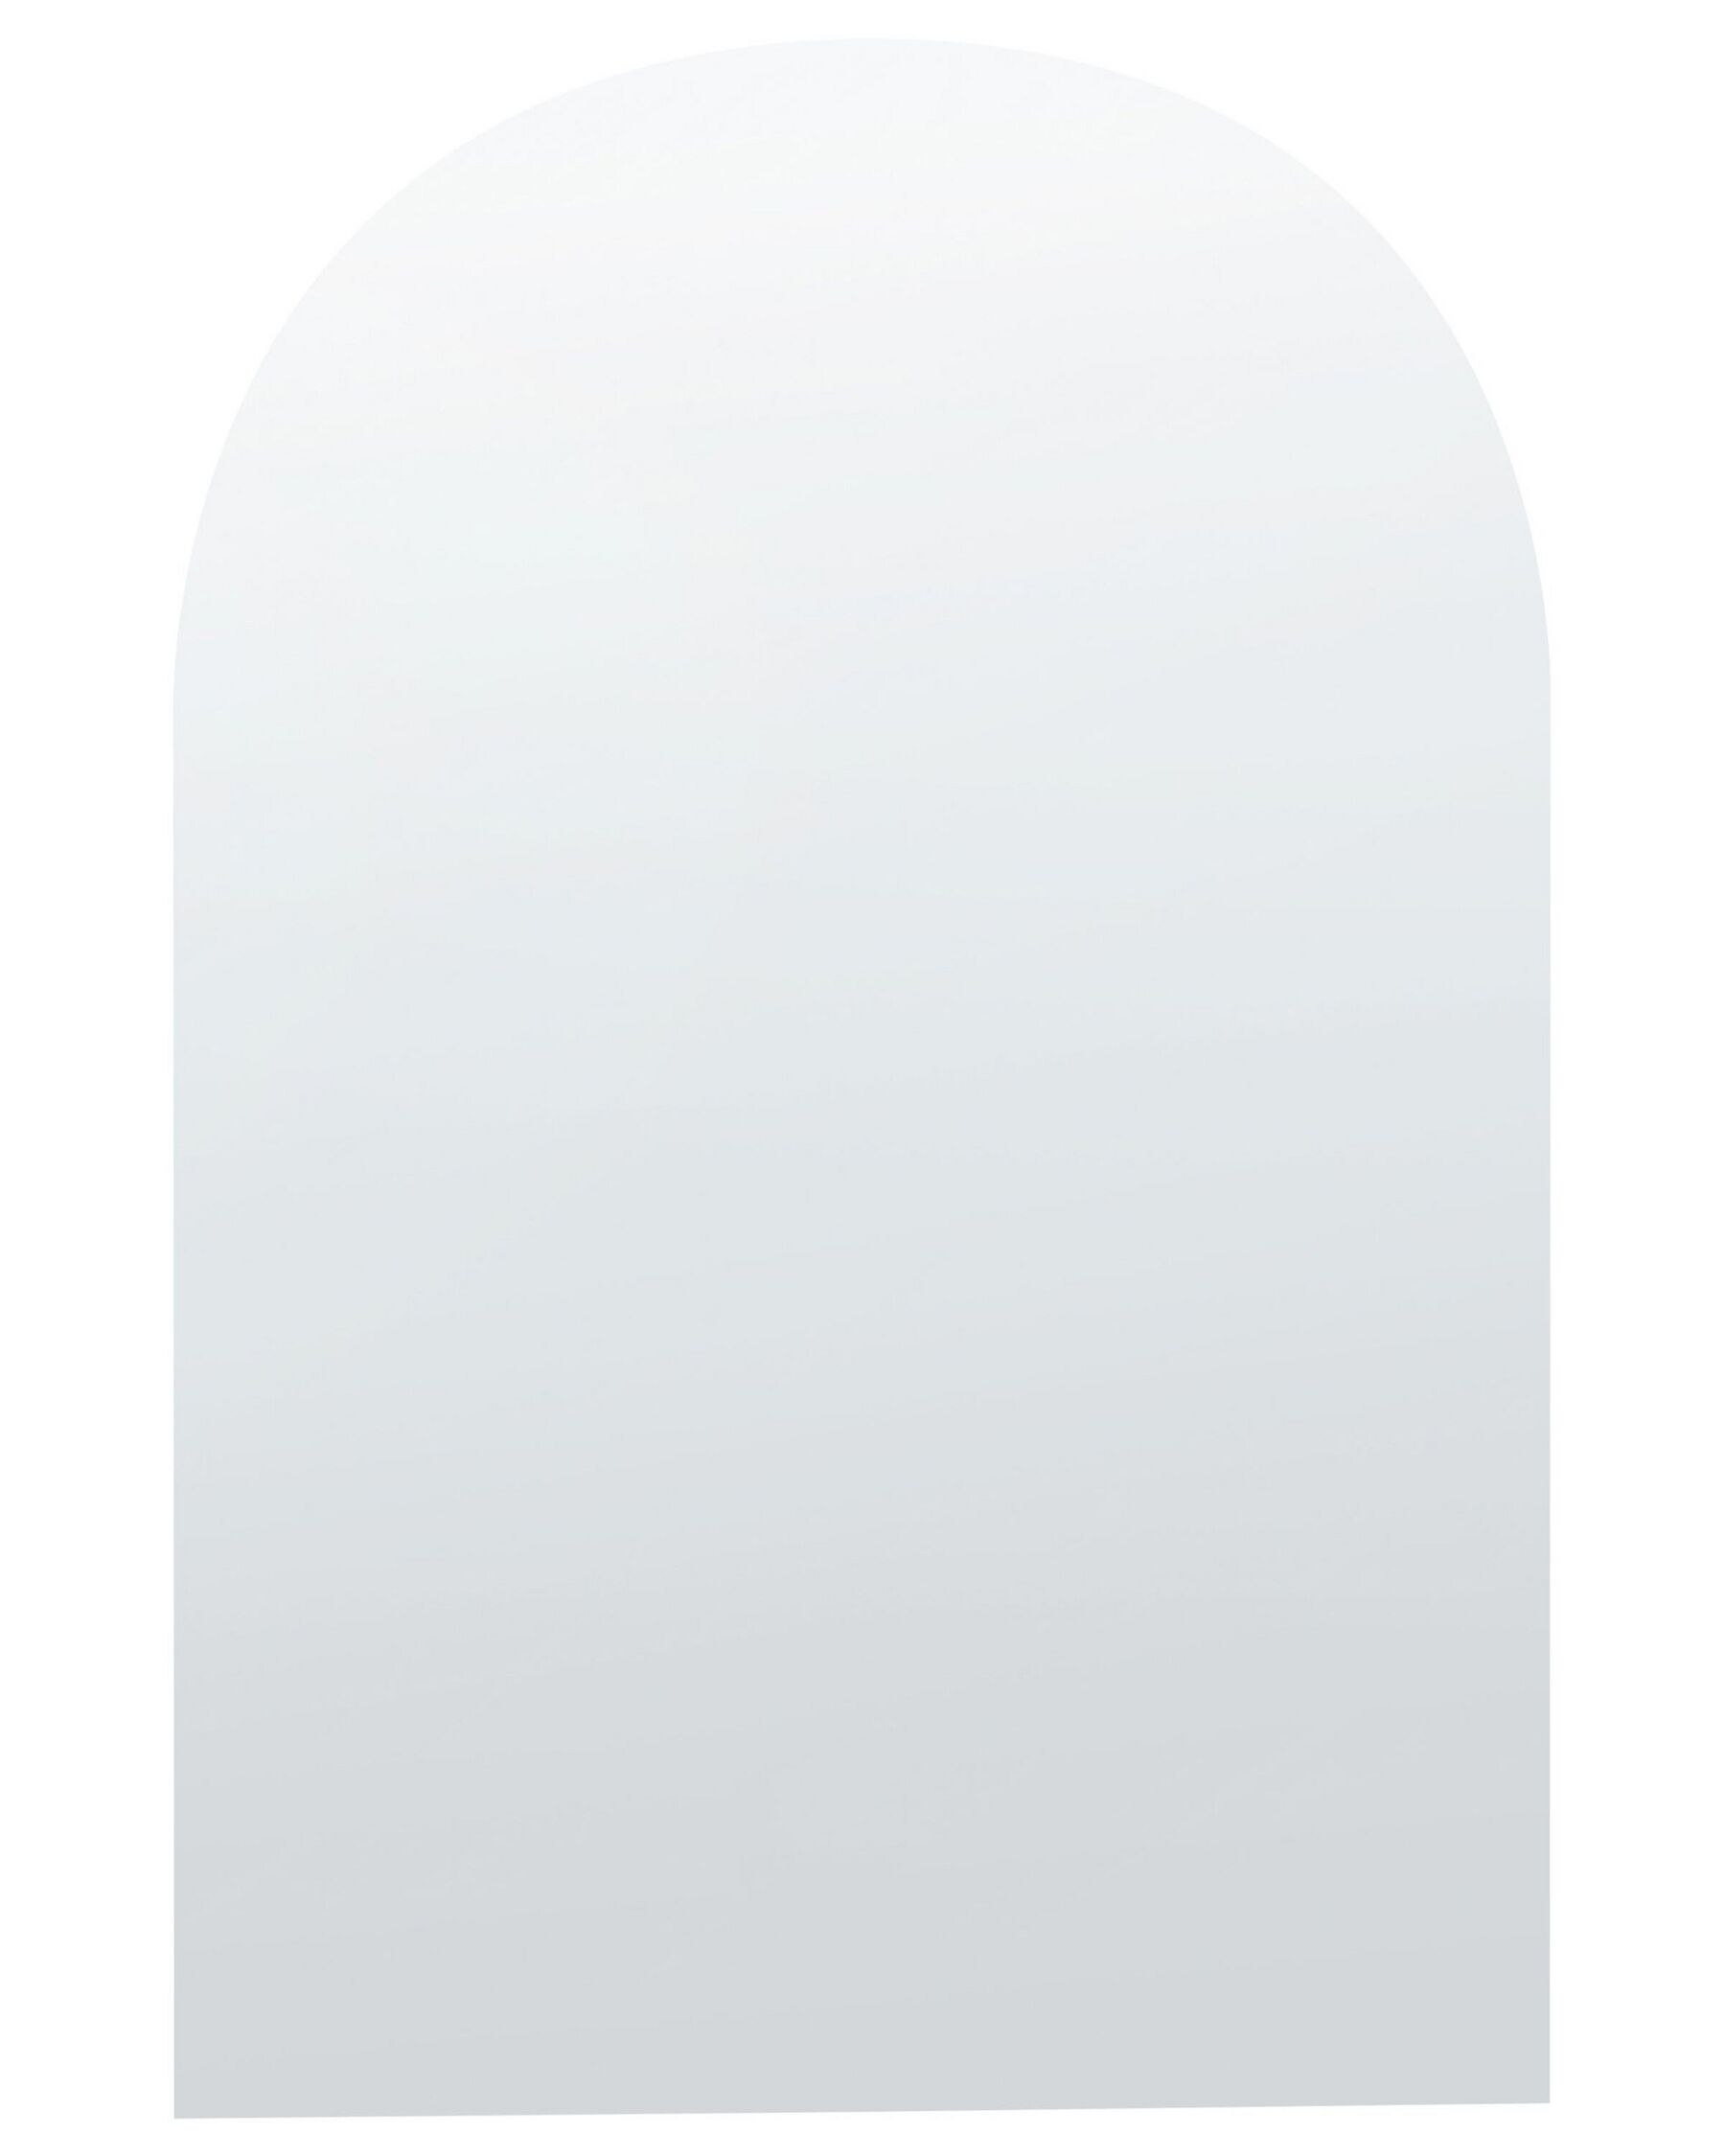 Specchio da parete argento 50 x 70 cm ANNECY_844159